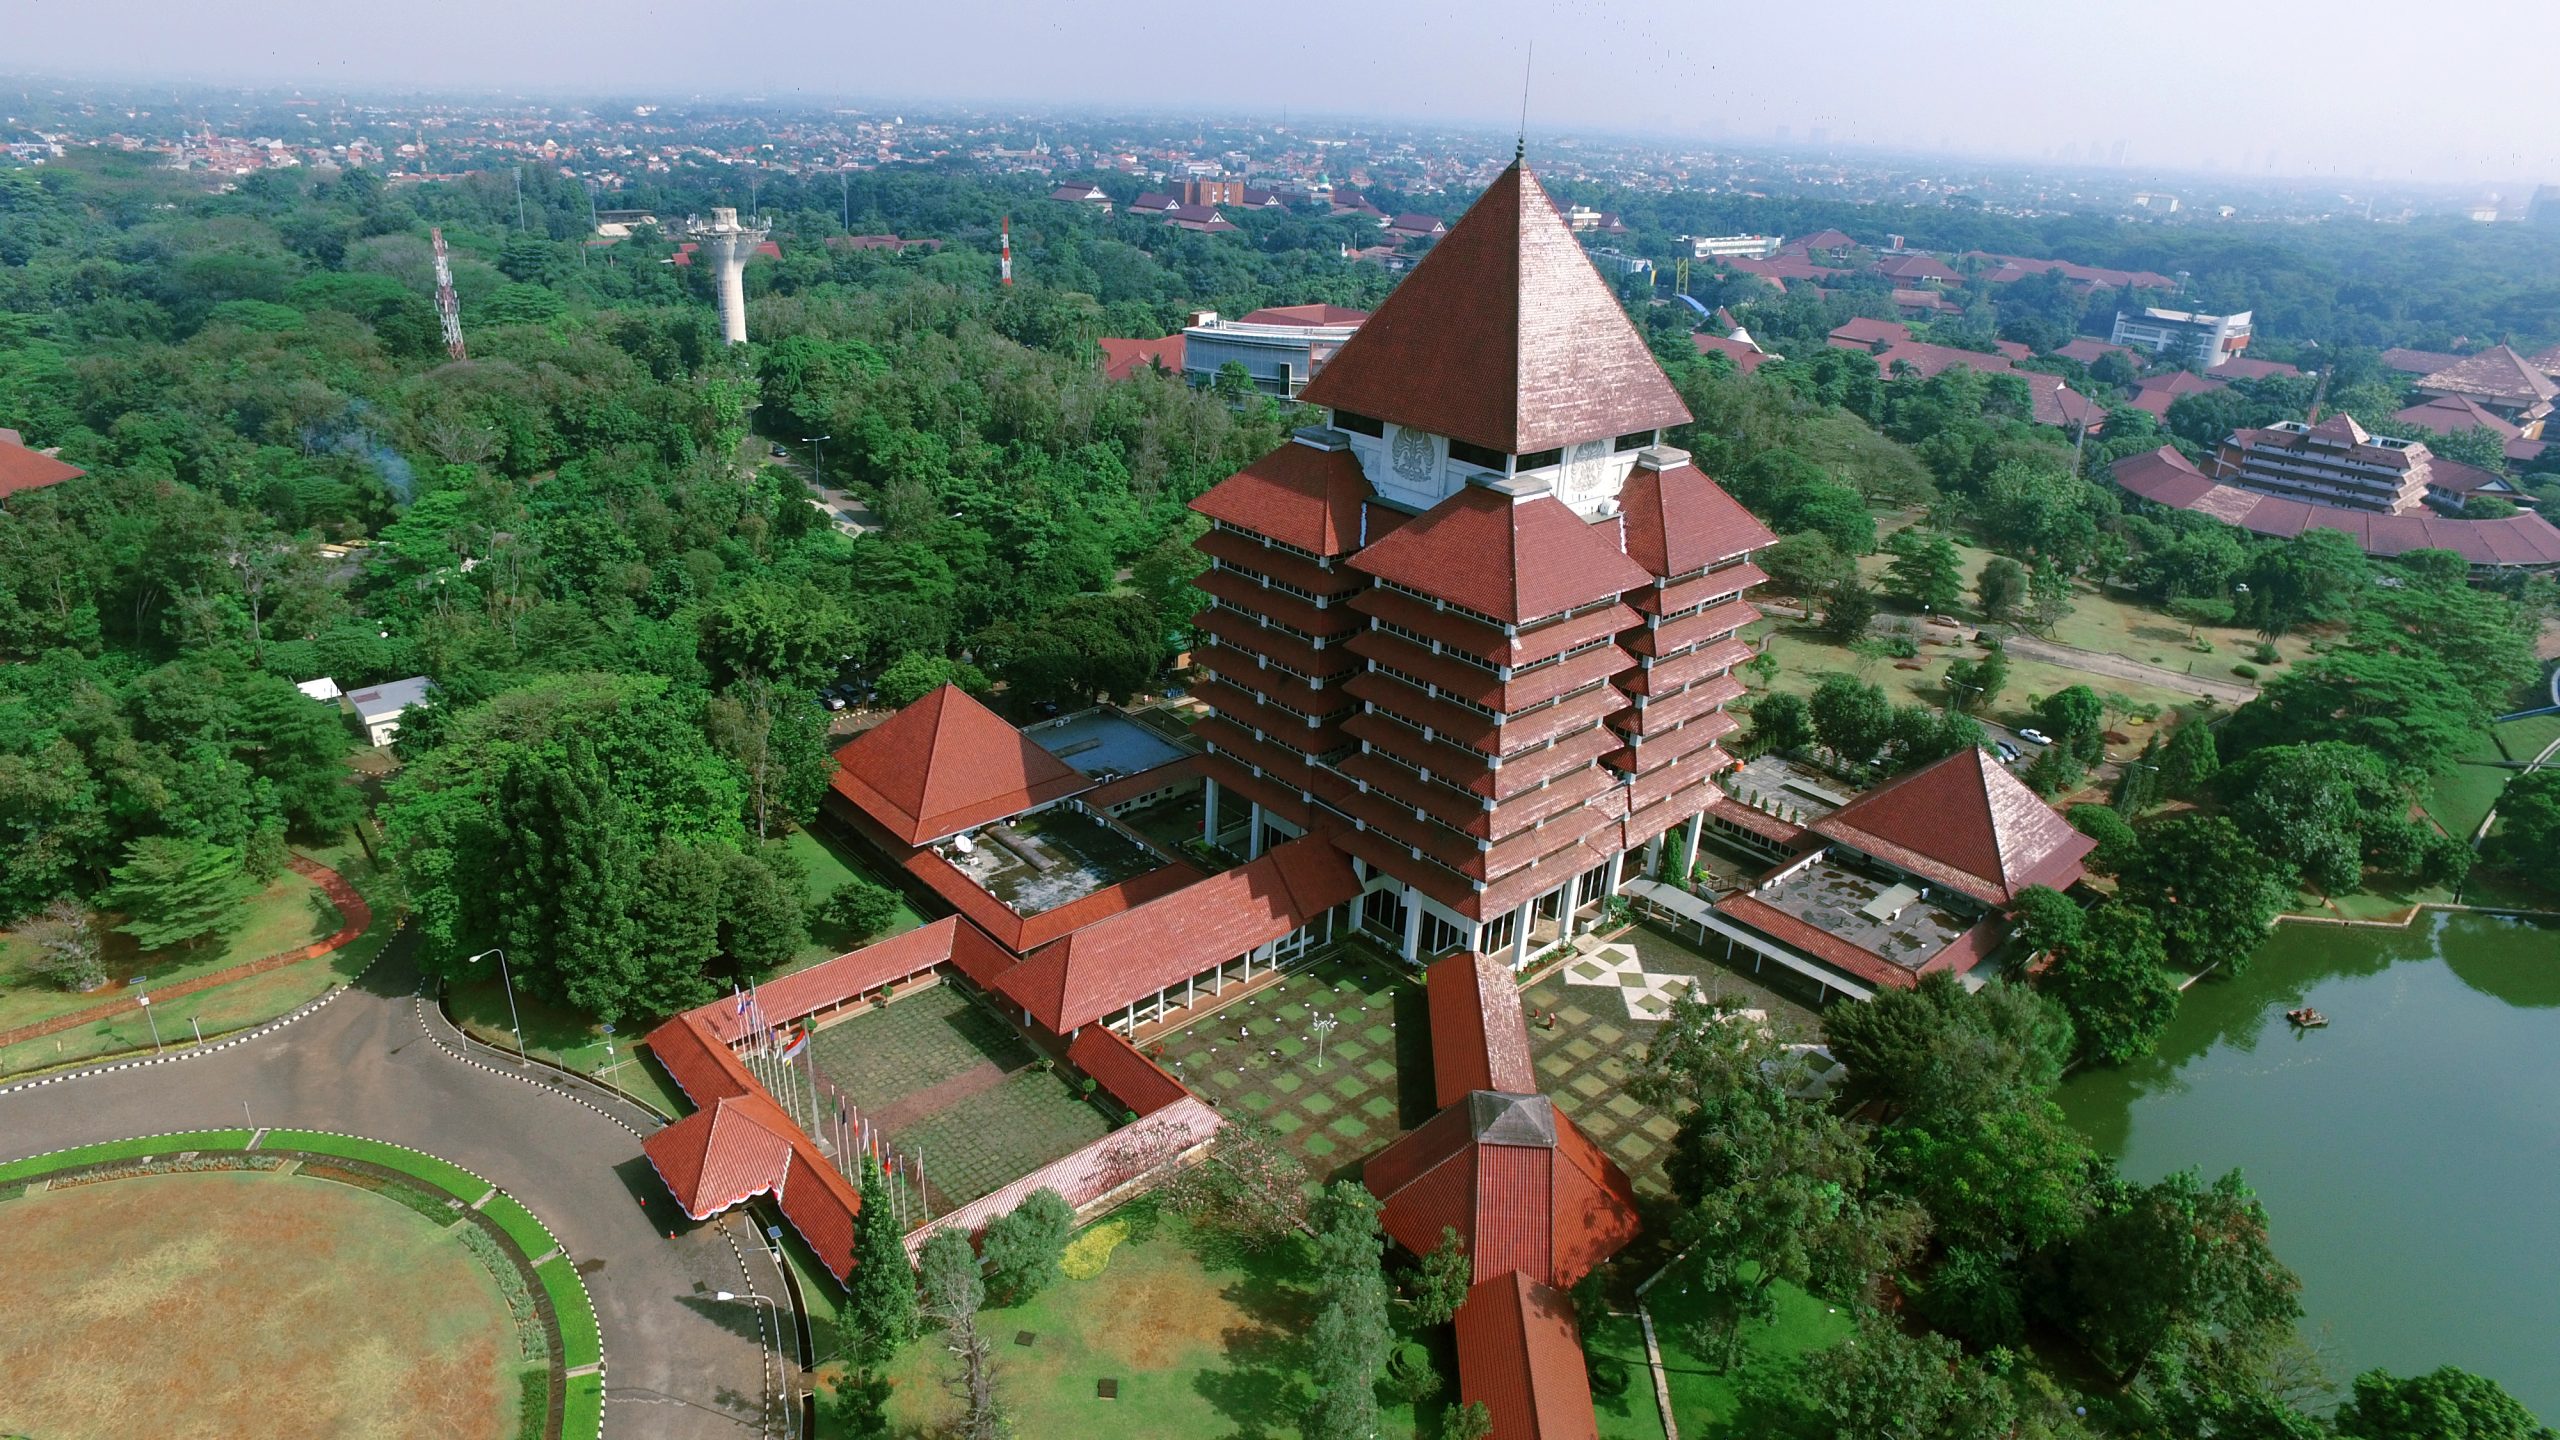 Universitas indonesia